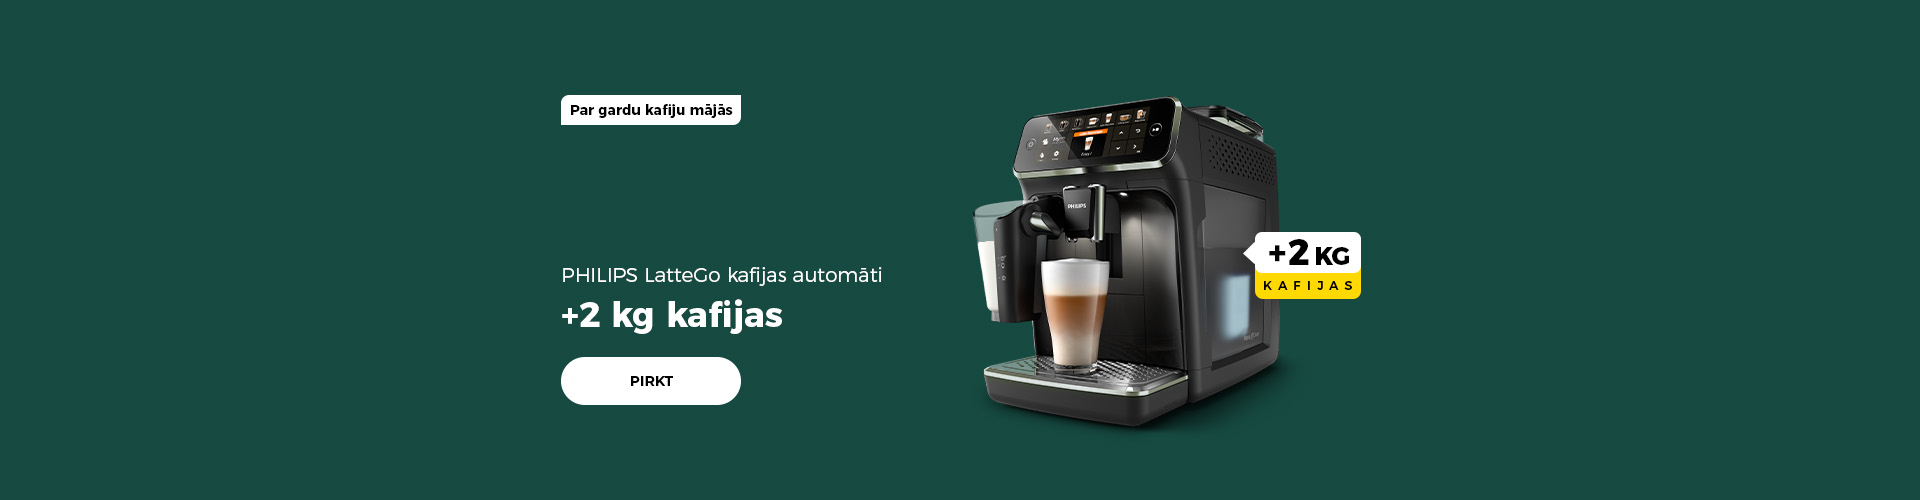 PHILIPS LatteGo kafijas automāti + 2 kg kafijas